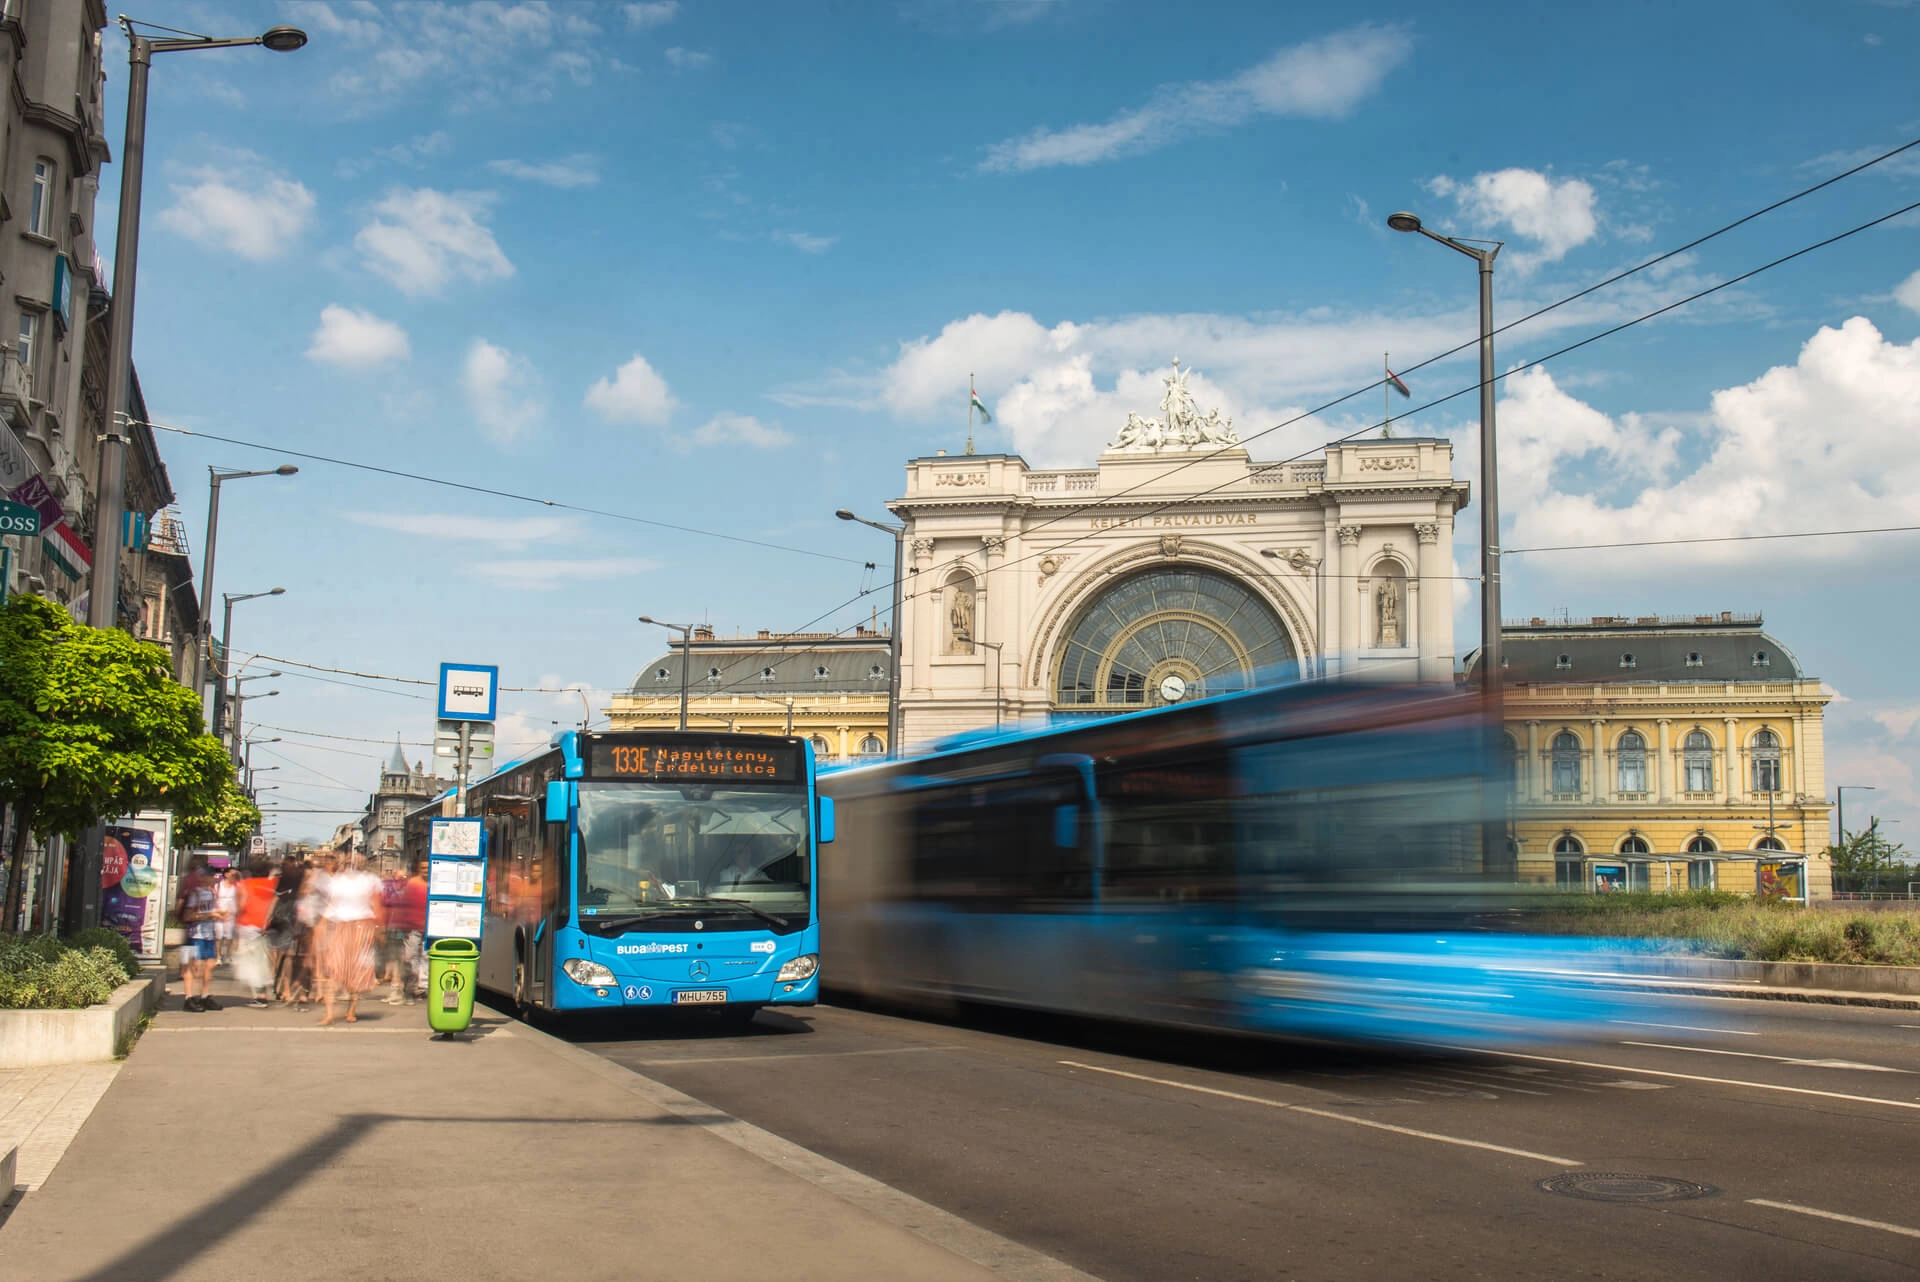 Hogyan kényszerült Budapest a kormány finanszírozására? – A Lakógyűlés gazdasági kérdéseit vizsgáltuk